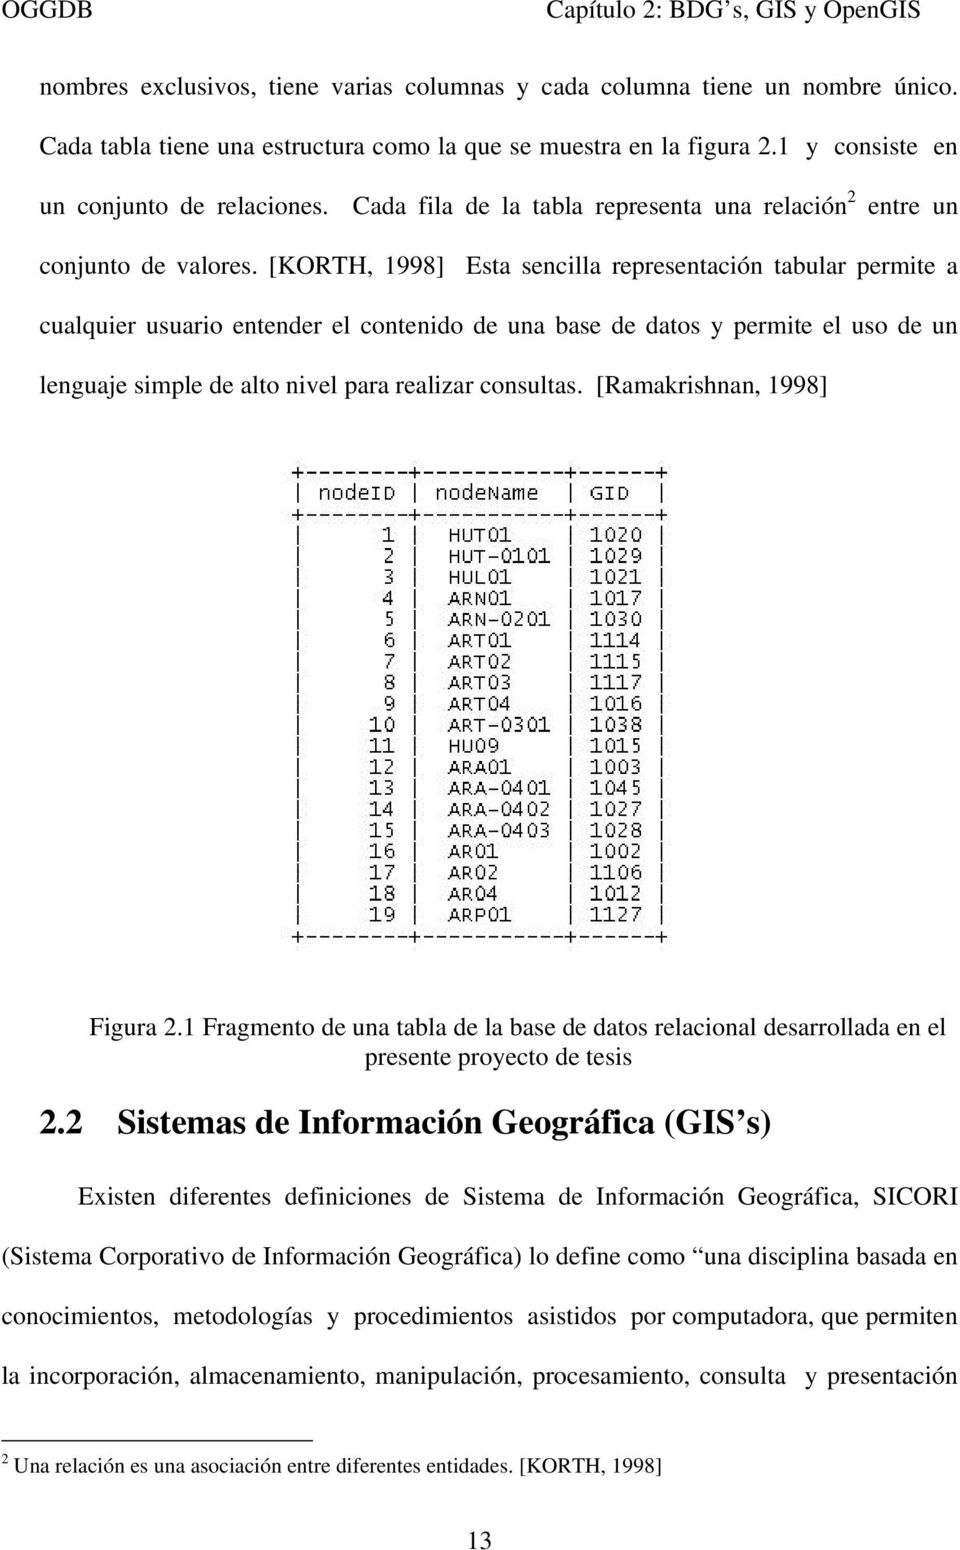 [KORTH, 1998] Esta sencilla representación tabular permite a cualquier usuario entender el contenido de una base de datos y permite el uso de un lenguaje simple de alto nivel para realizar consultas.